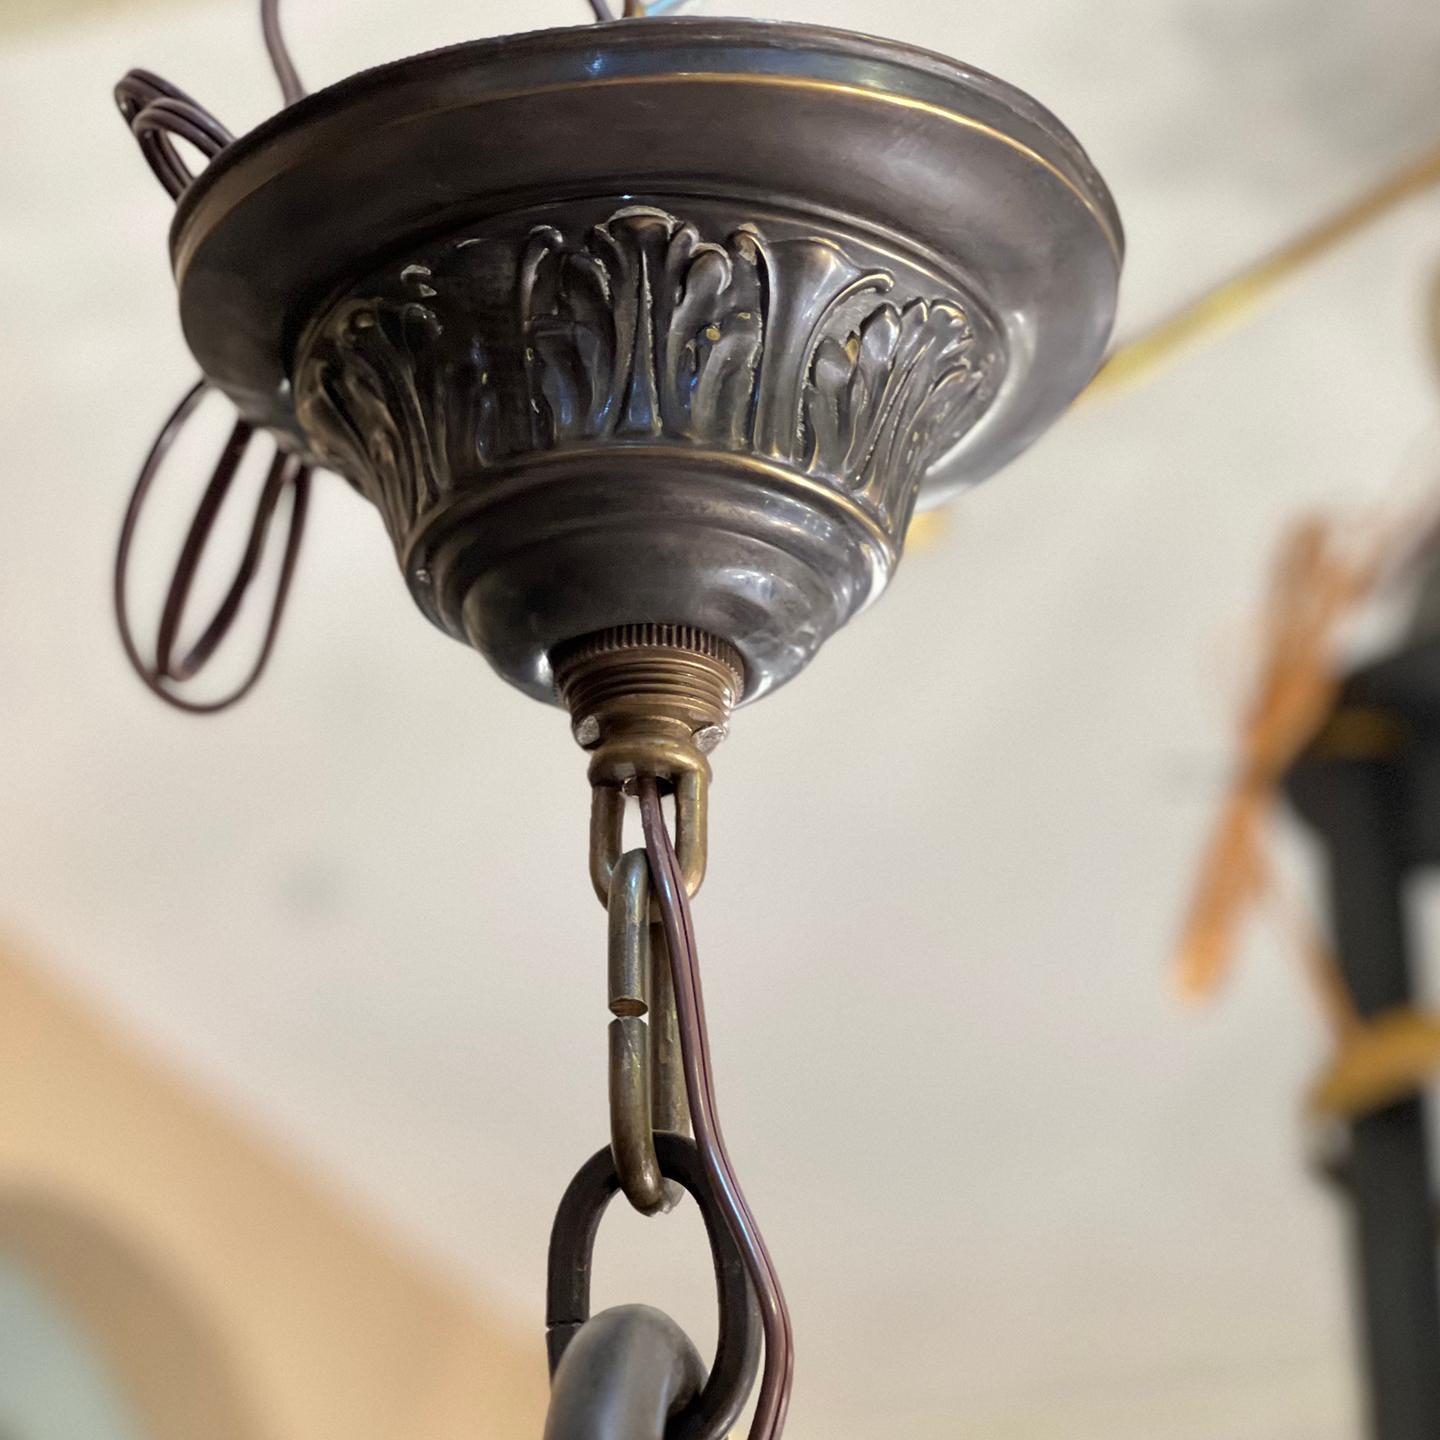 Lustre en bronze anglais circa 1900 avec 6 globes en verre gravé et lumières intérieures.

Mesures :
Hauteur : 37